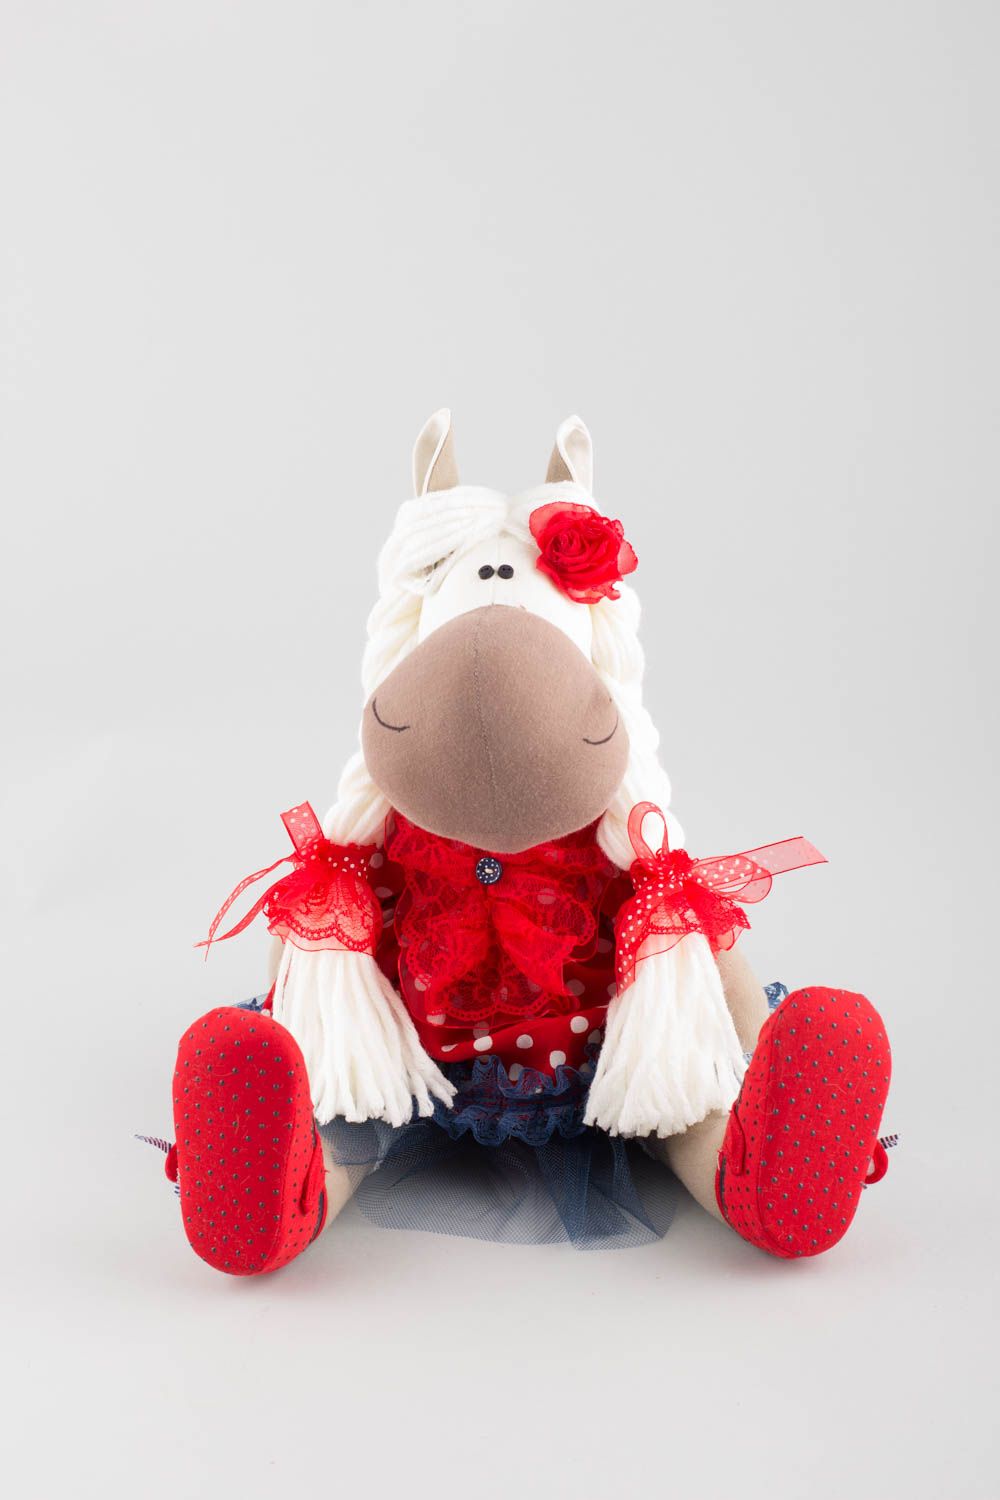 Textil Kuscheltier Pferd niedlich Spielzeug für Kinder und Dekor nette Schöne foto 3